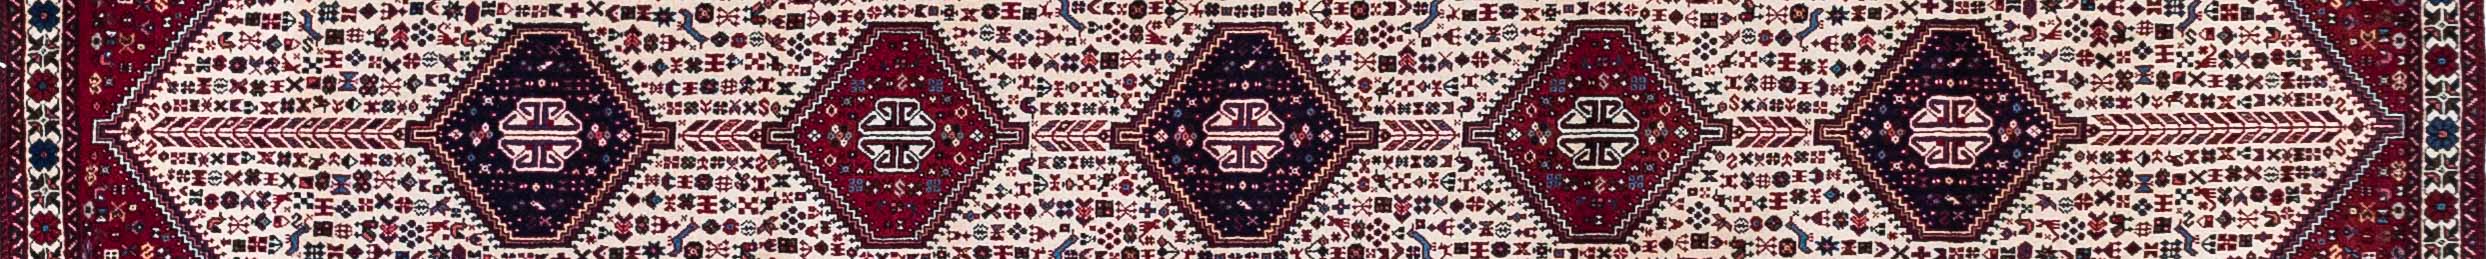 Abadeh Persian Carpet Rug N1Carpet Canada Montreal Tapis Persan 1990